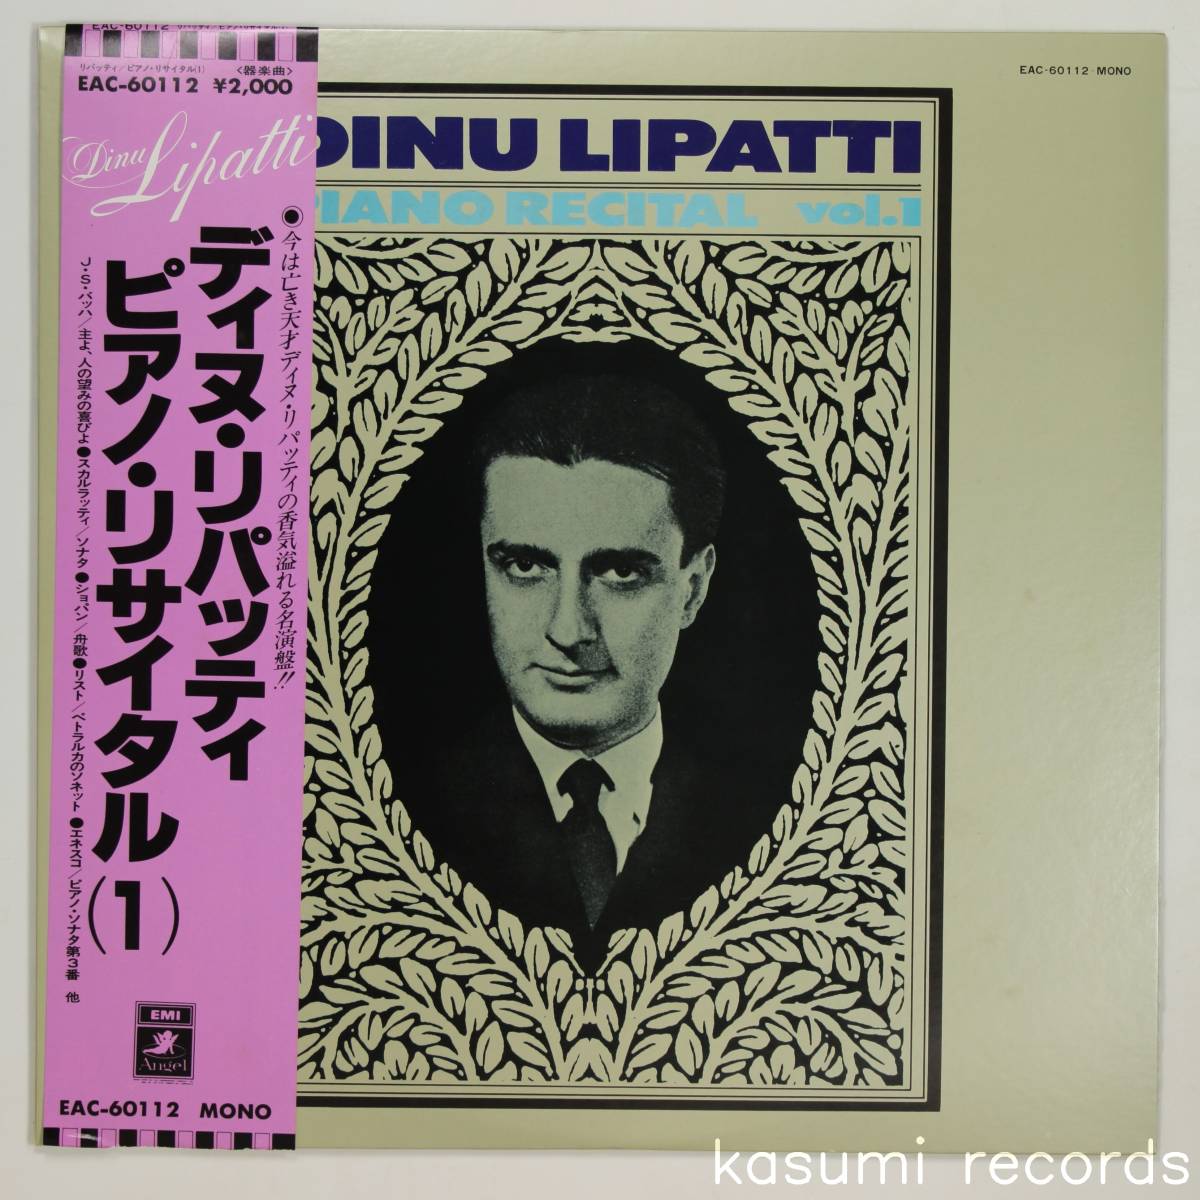 【国内盤LP】ディヌ・リパッティ/ピアノ・リサイタル 1(並品,SP復刻,Dinu Lipatti)_画像1